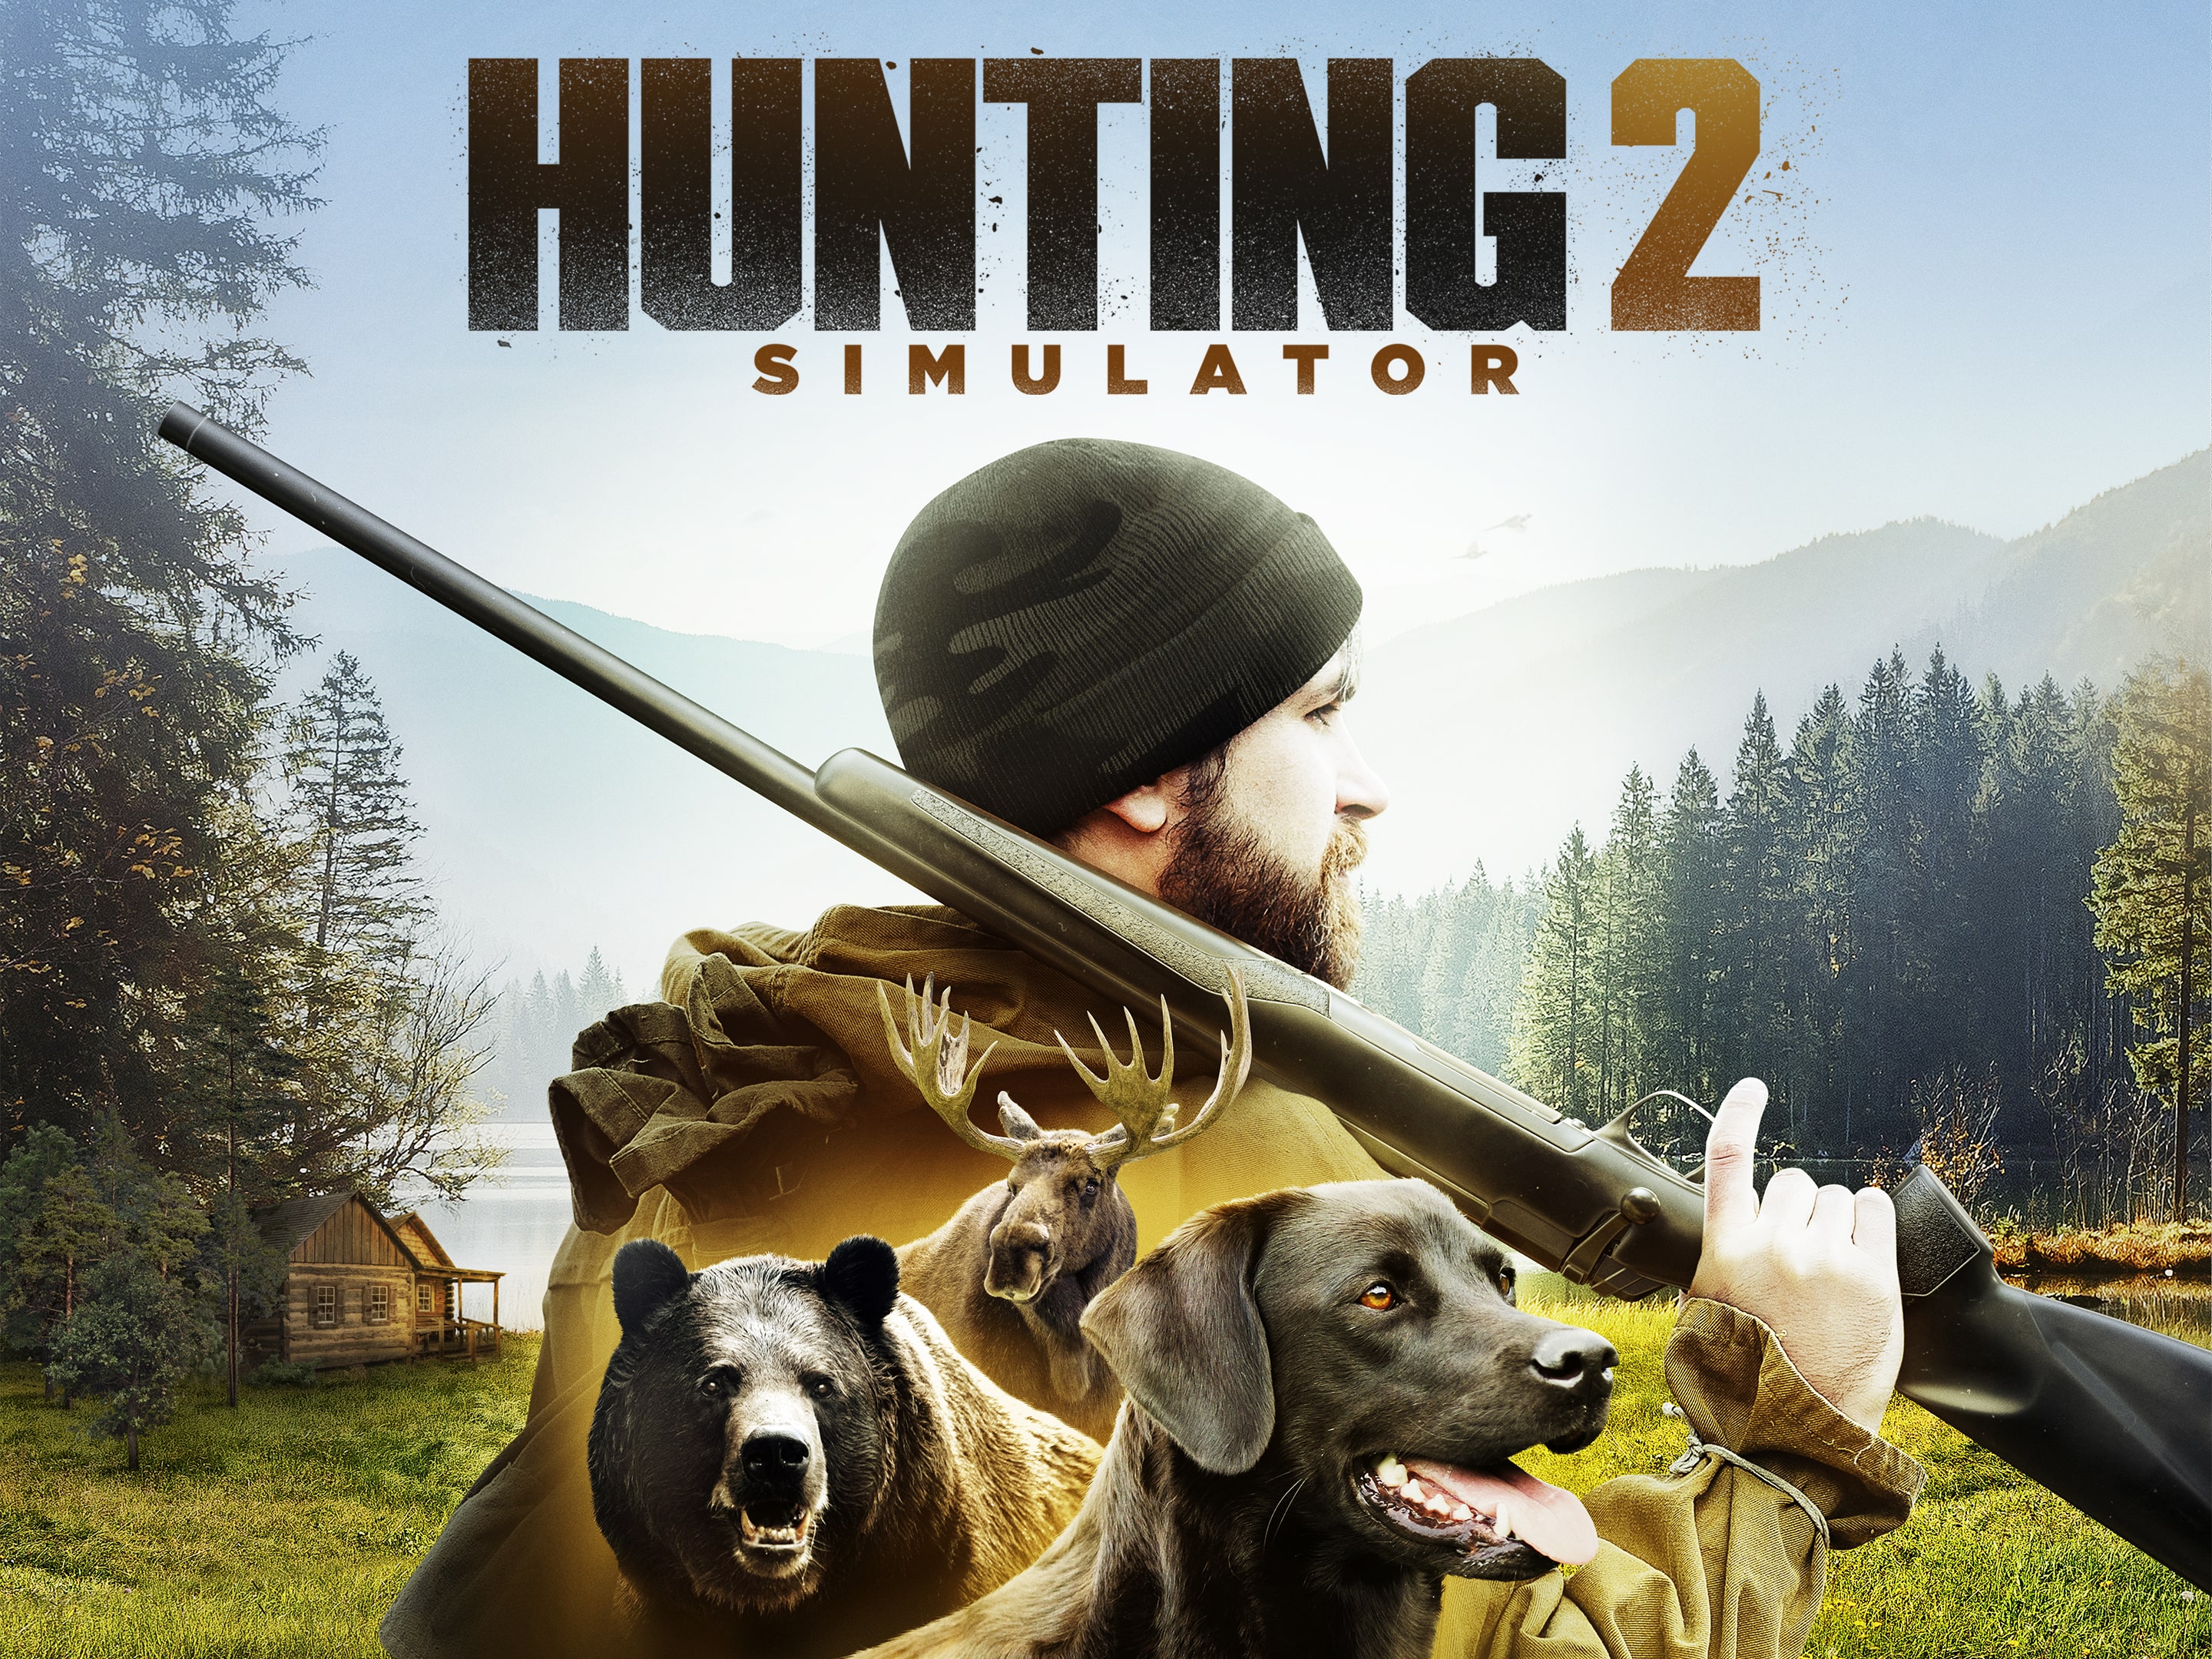 2515円 【メーカー公式ショップ】 Hunting Simulator 2 PS4 北米版 輸入版 ソフト